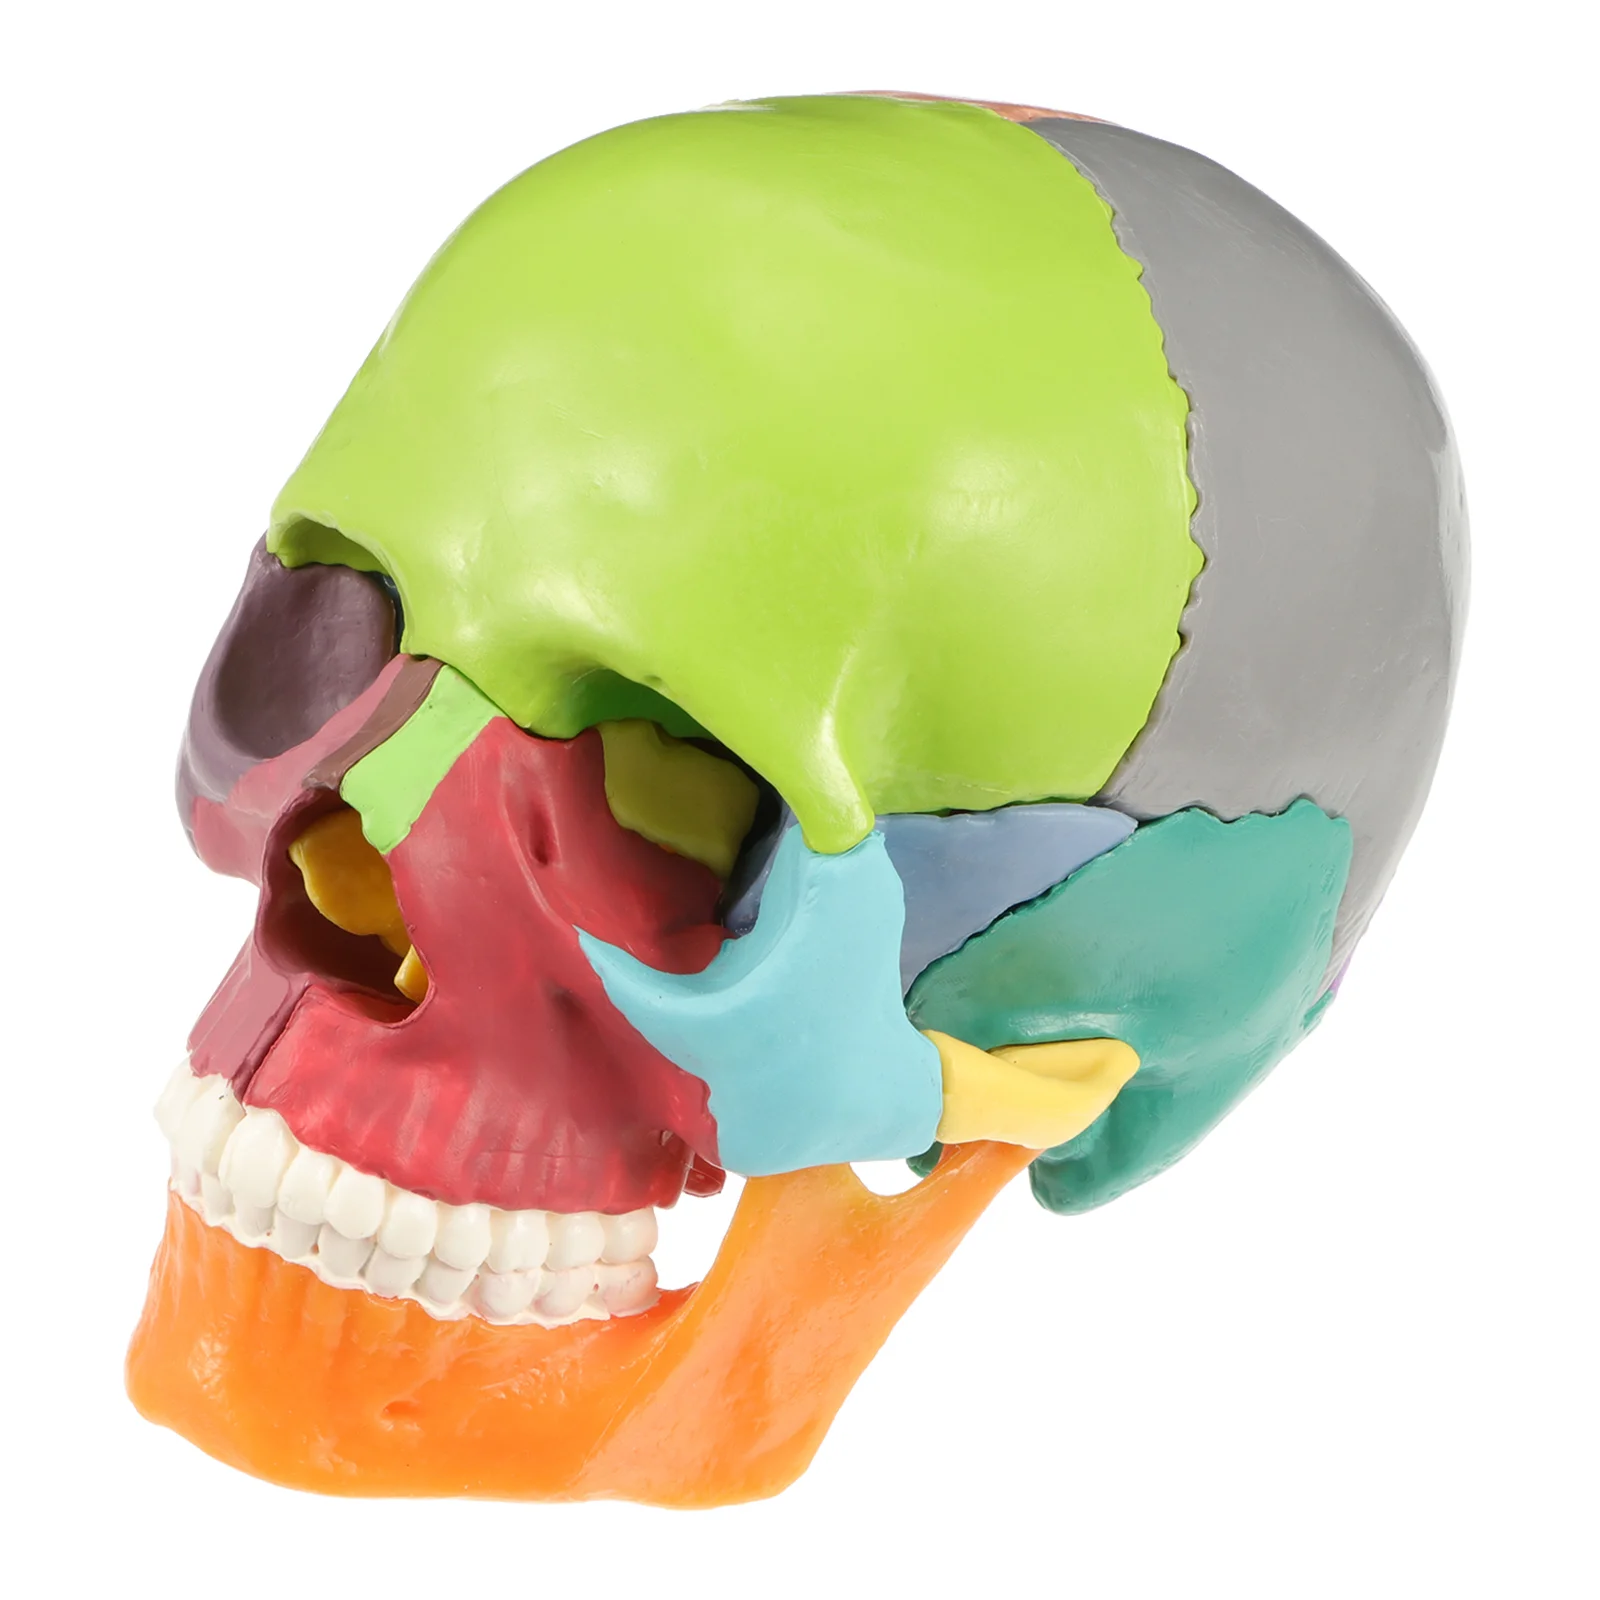 

Голова медицинская модель человеческая модель красочная медицинская анатомическая модель анатомии